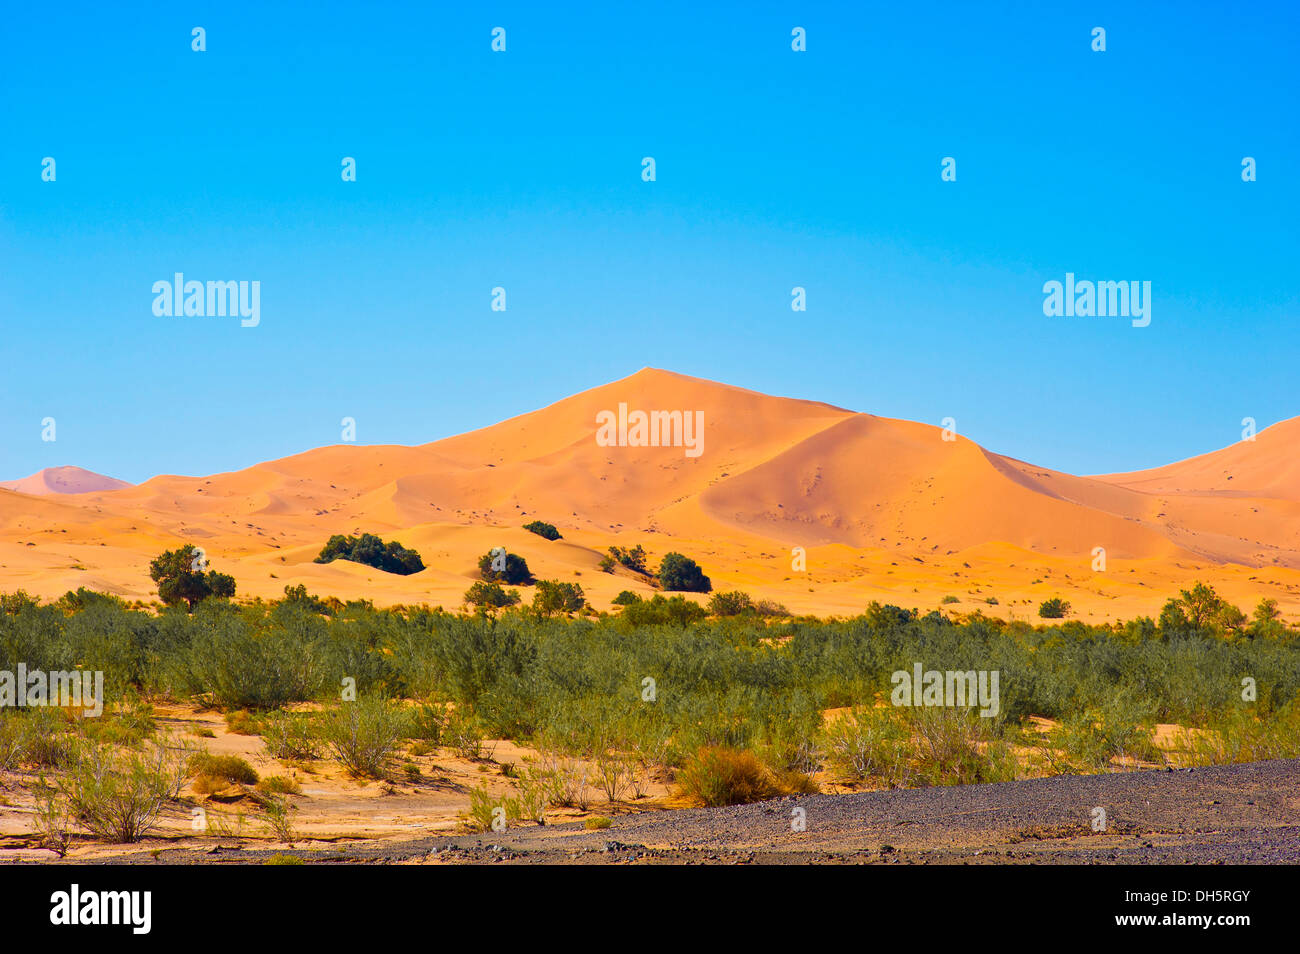 Dunes de l'Erg Chebbi, buissons, arbustes et hamada désert paysage à l'avant, à l'éperon désert, désert du Sahara, le sud du Maroc Banque D'Images